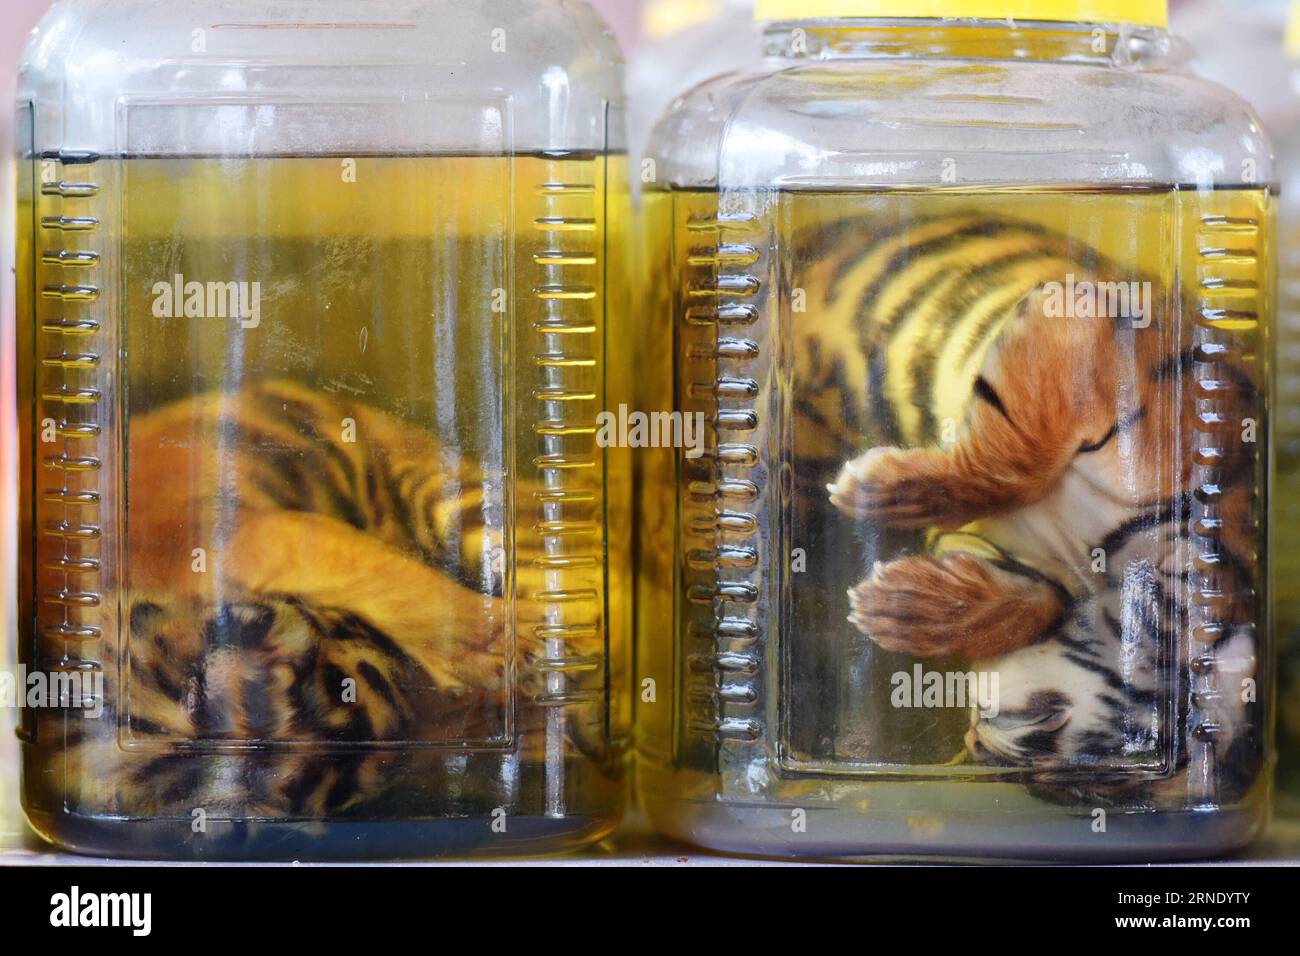 (160604) -- KANCHANABURI, 3. Juni 2016 -- zwei mit Chemikalien getränkte Tigerjunges werden ausgestellt, nachdem die Forscher sie im Wat Pha Luang Ta Bua, oder Tiger Temple, in der Provinz Kanchanaburi, im Zentrum Thailands, am 3. Juni 2016 gefunden haben. Die letzte Partie von insgesamt 137 Tigern aus dem Tigertempel in der thailändischen Provinz Kanchanaburi wurde am Samstag umgesiedelt, was der sechstägigen Verlegung von Tigern ein Ende setzte, während 5 Verdächtige, darunter 3 Mönche, nun wegen Wildtierbesitzes angeklagt werden. ) THAILAND-KANCHANABURI-WILDTIER-TIGER-TEMPELSONDE LixMangmang PUBLICATIONxNOTxINxCHN 160604 Kanchanaburi Juni Stockfoto